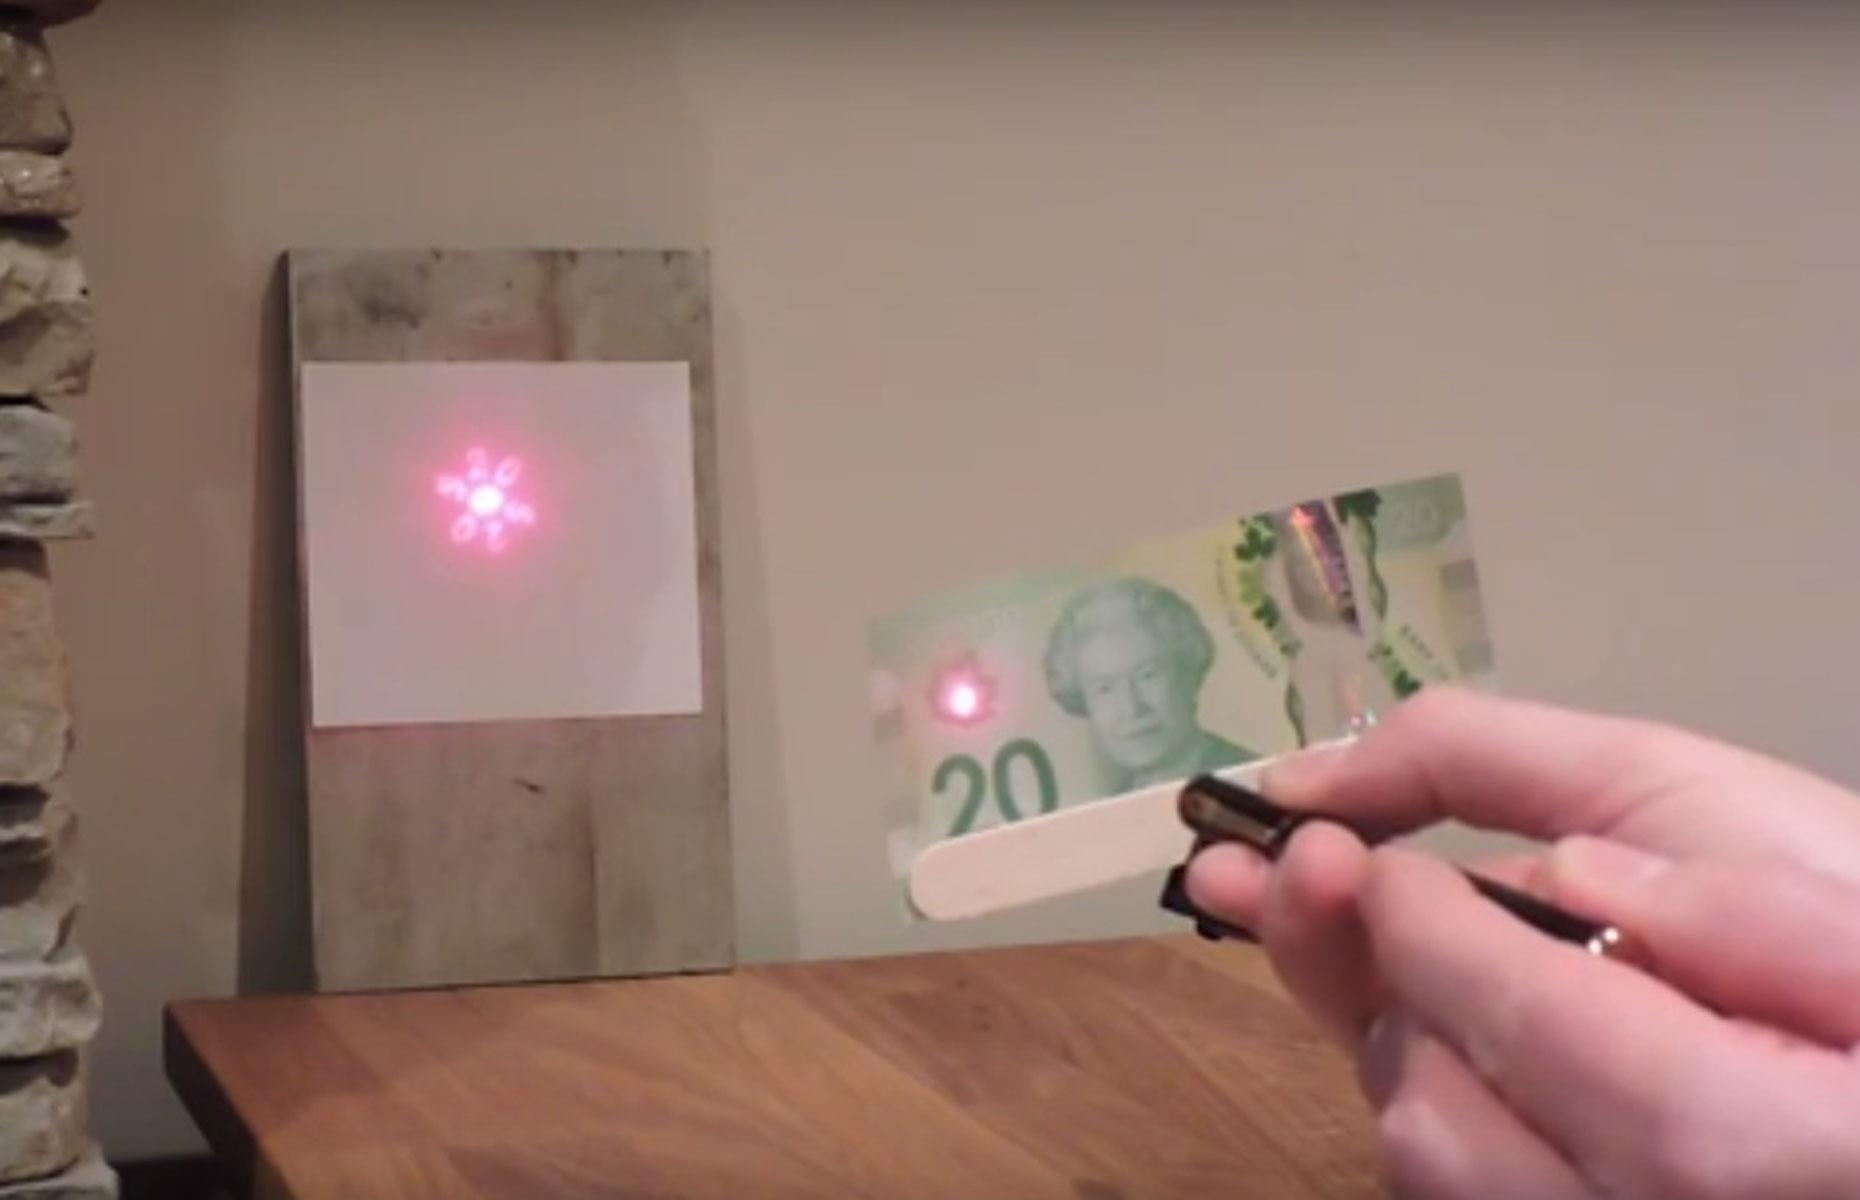 Canadian banknotes: laser trick